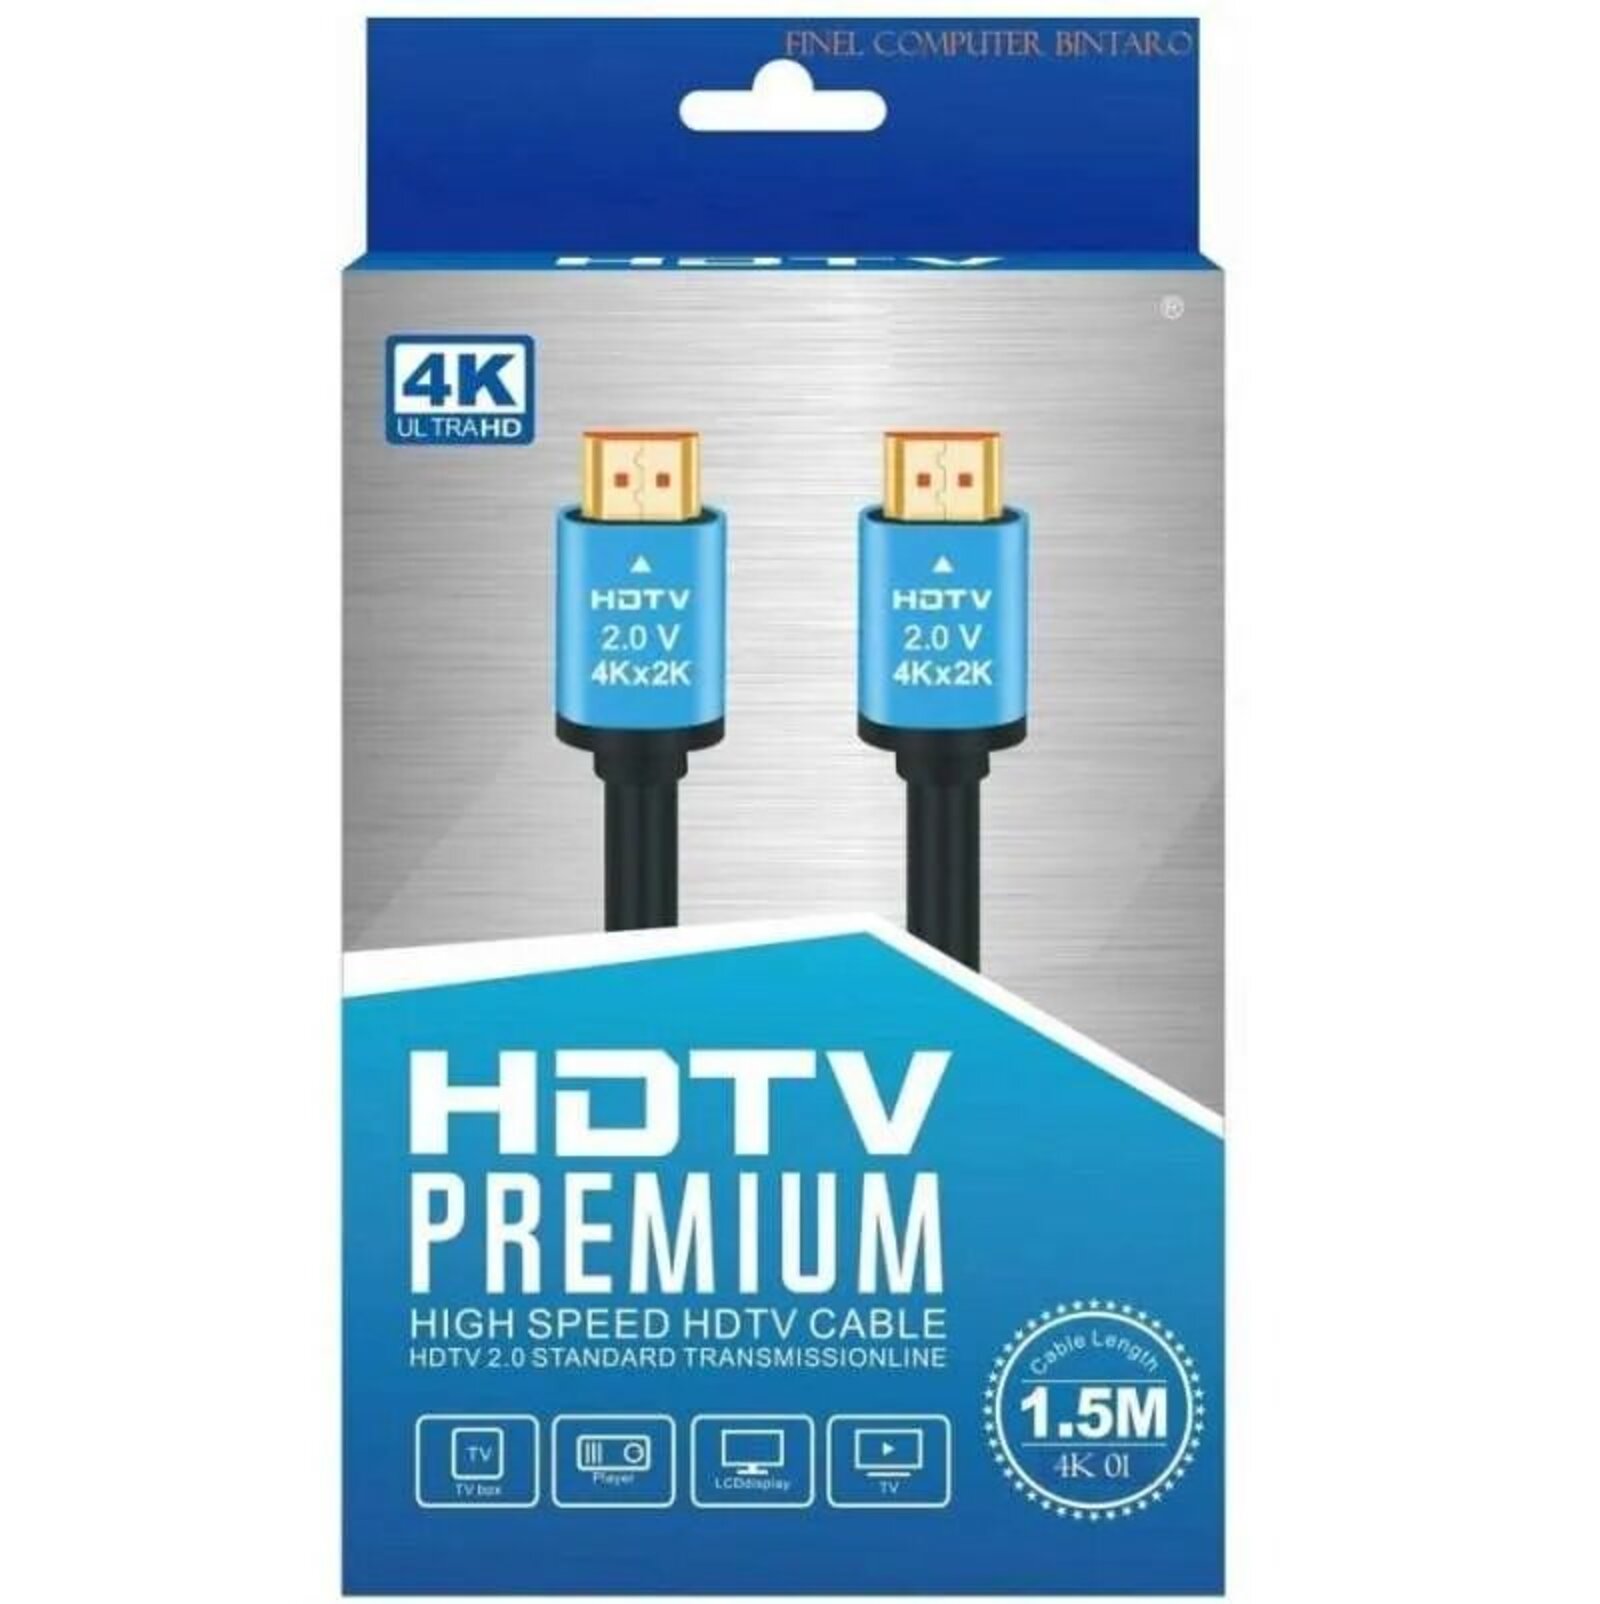 Cable hdmi 1.5m 4K premium - Maroc